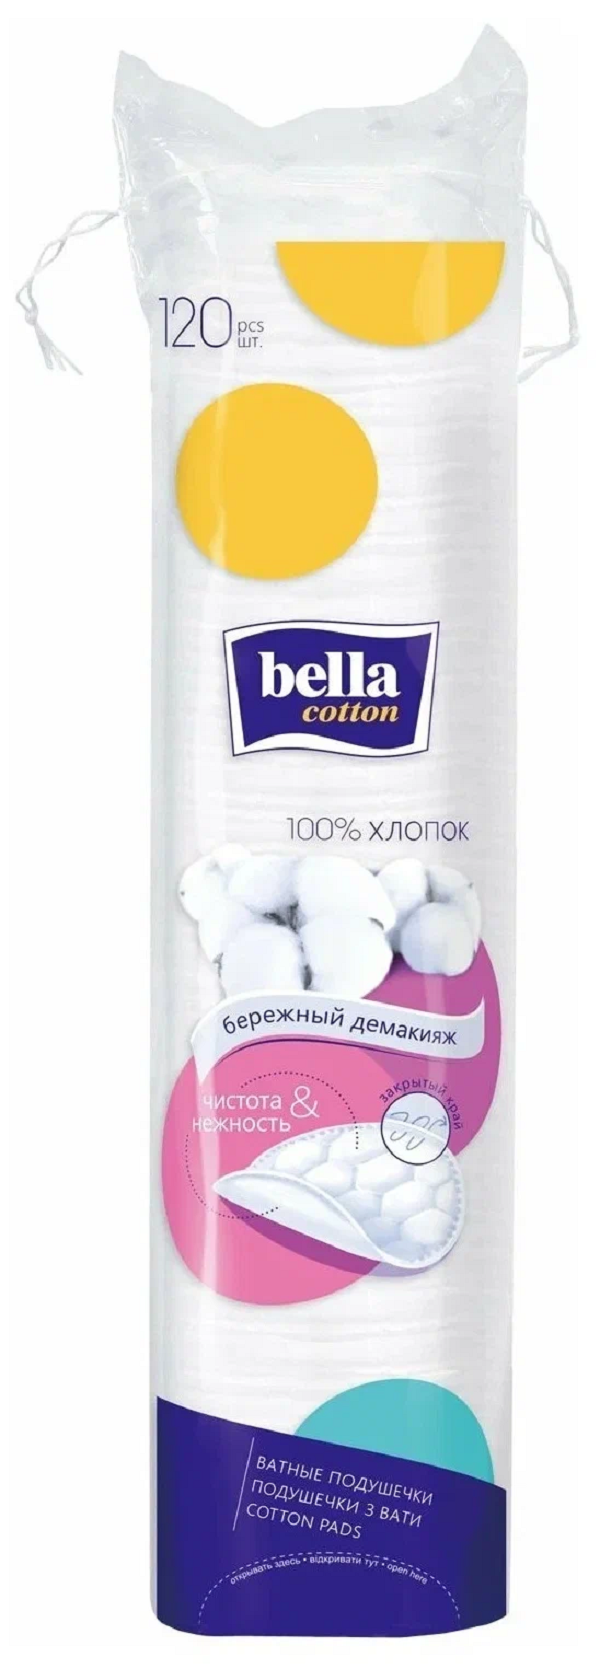 Диски ватные Bella Cotton хлопок, 120 шт. ватные диски aura beauty cotton pads 100шт 3 уп